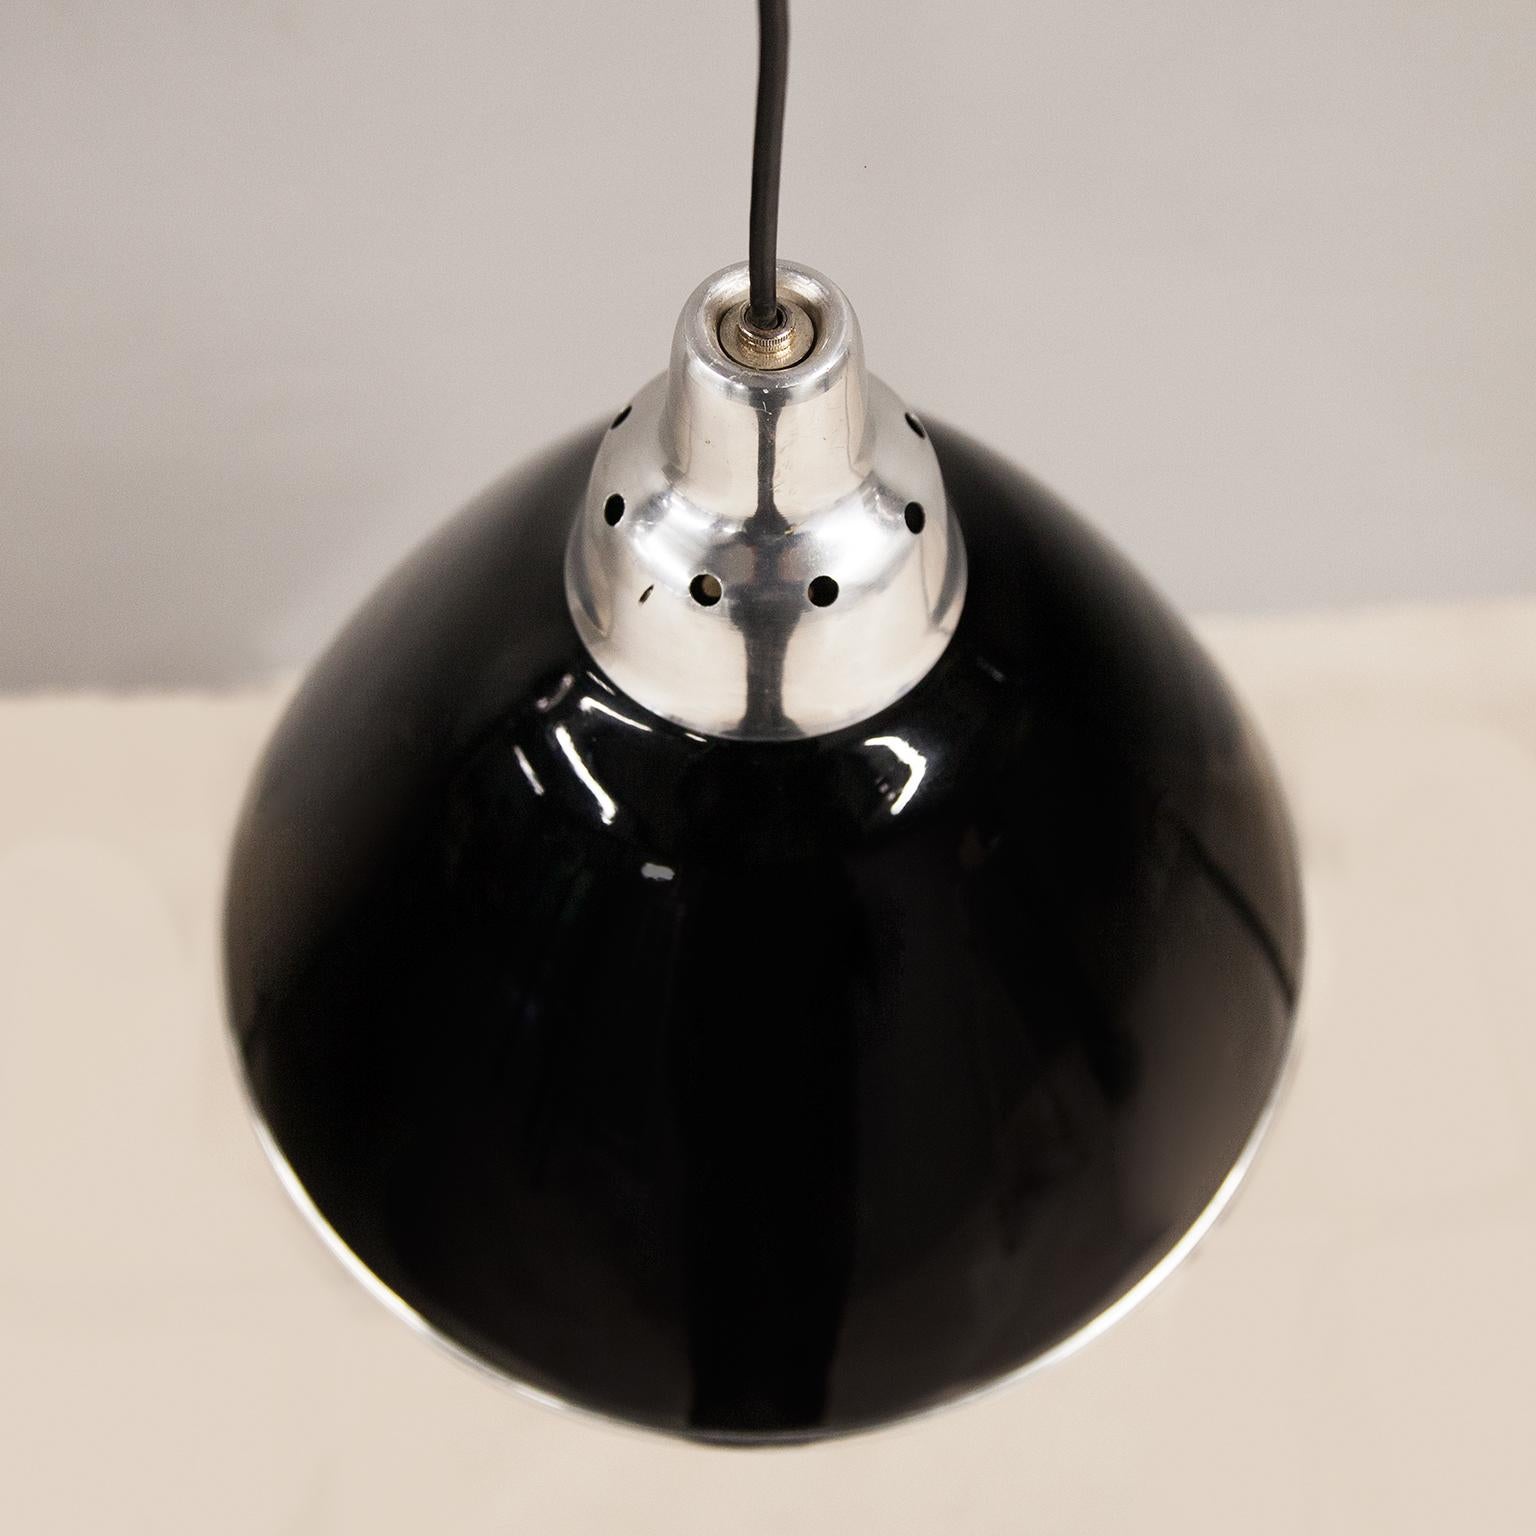 Kegelförmige Pendelleuchte Scheinwerfer entworfen von Ingo Maurer und hergestellt von Design M, Deutschland 1968. Der Schirm ist aus schwarz lackiertem Metall und der Diffusor aus transparentem Kunststoff und hat eine E27-Fassung. Der Scheinwerfer